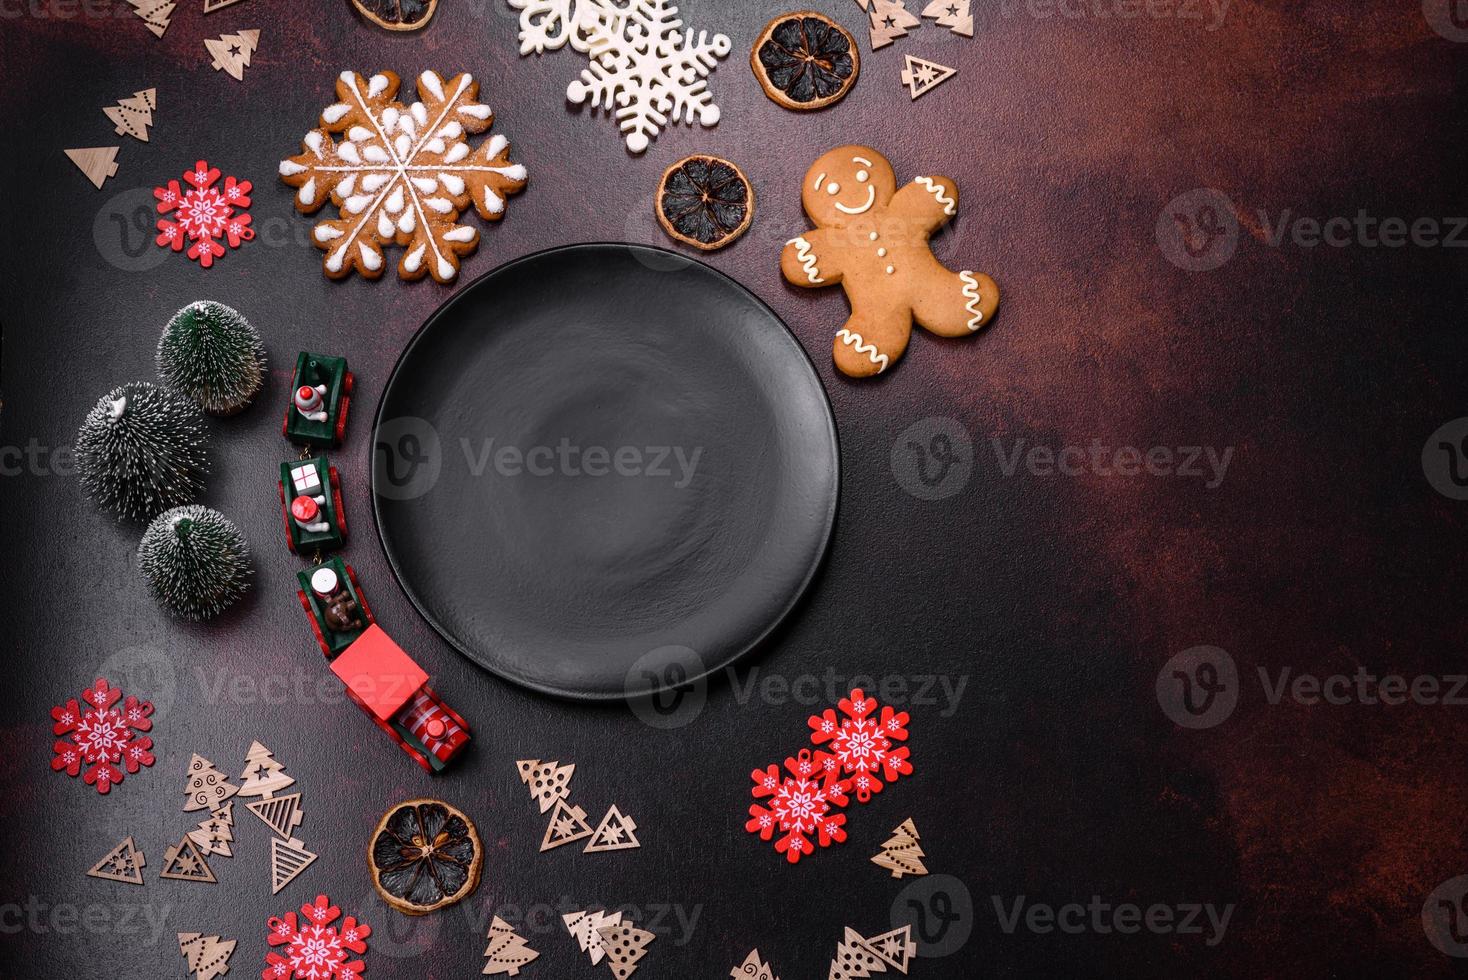 mesa de natal festiva em casa decorada por brinquedos e pães de gengibre foto